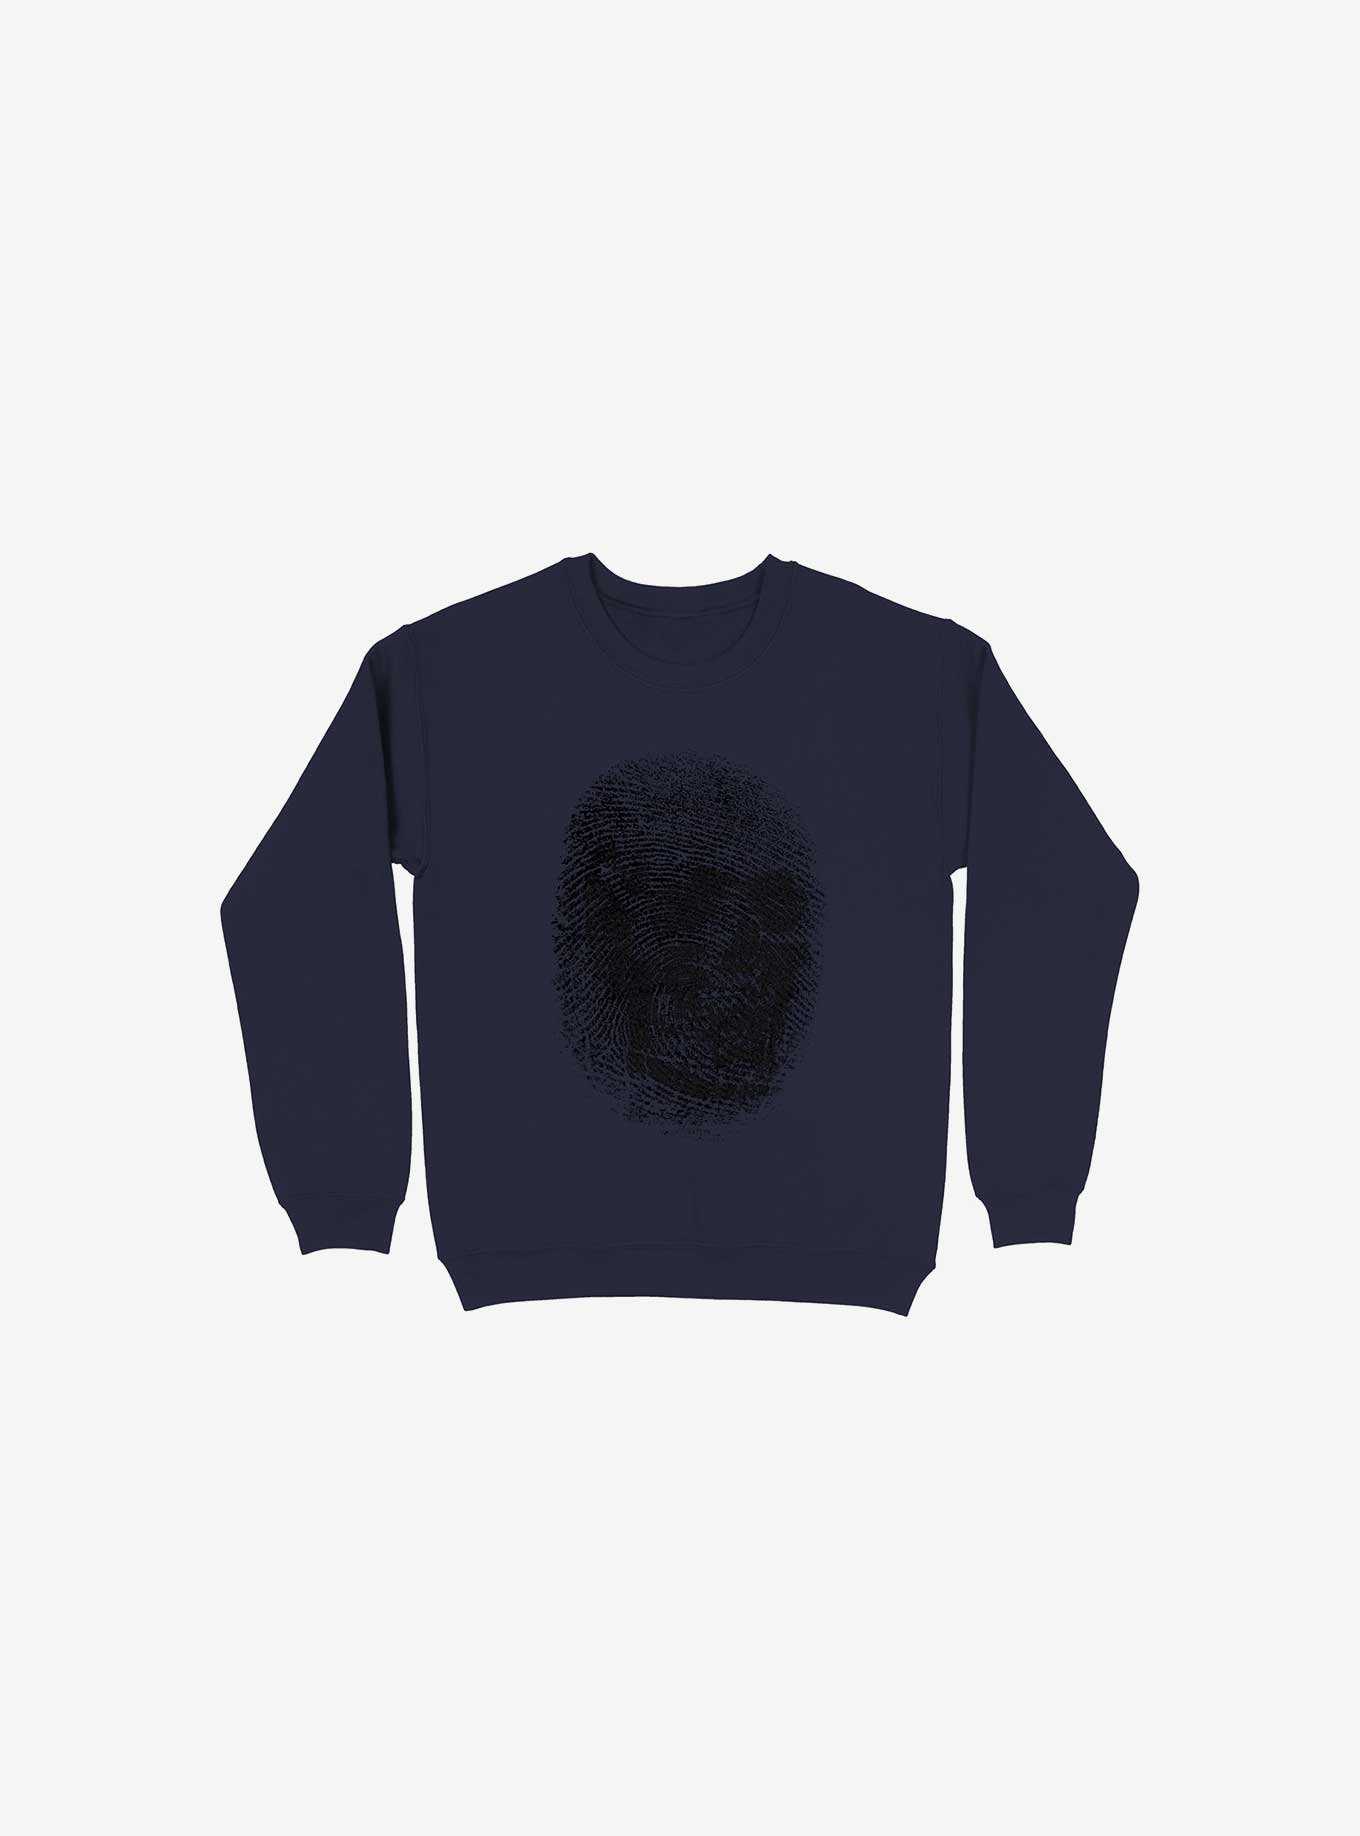 Unique And Equal Skull Fingerprint Navy Blue Sweatshirt, , hi-res